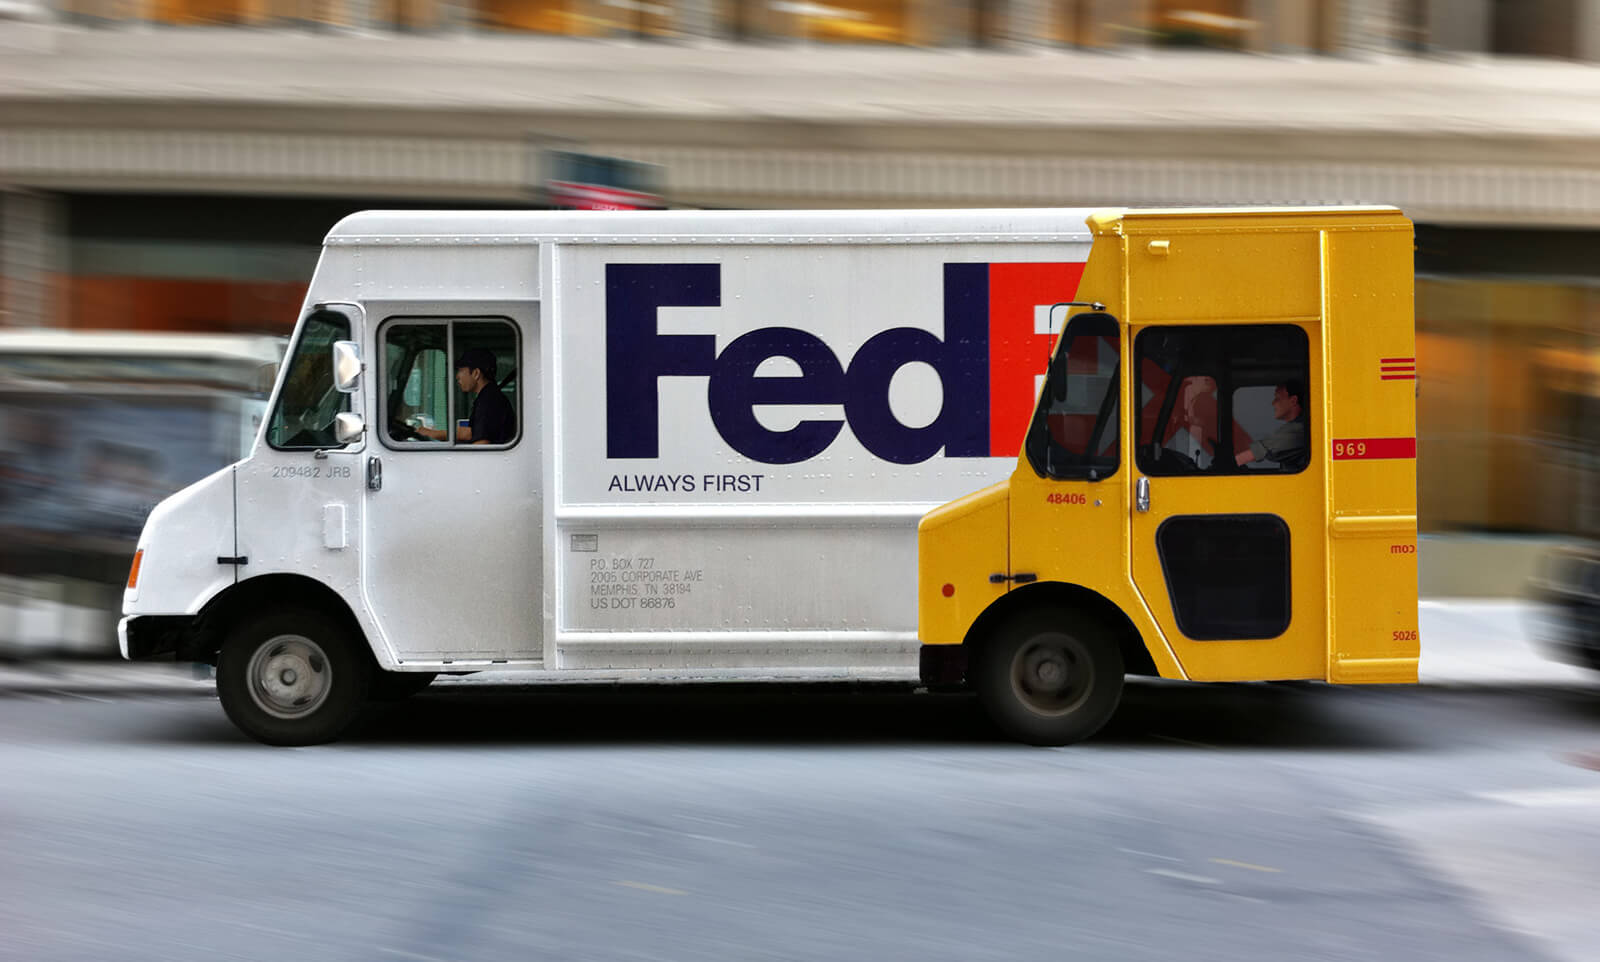 FedEx ‘Always First’ Truck